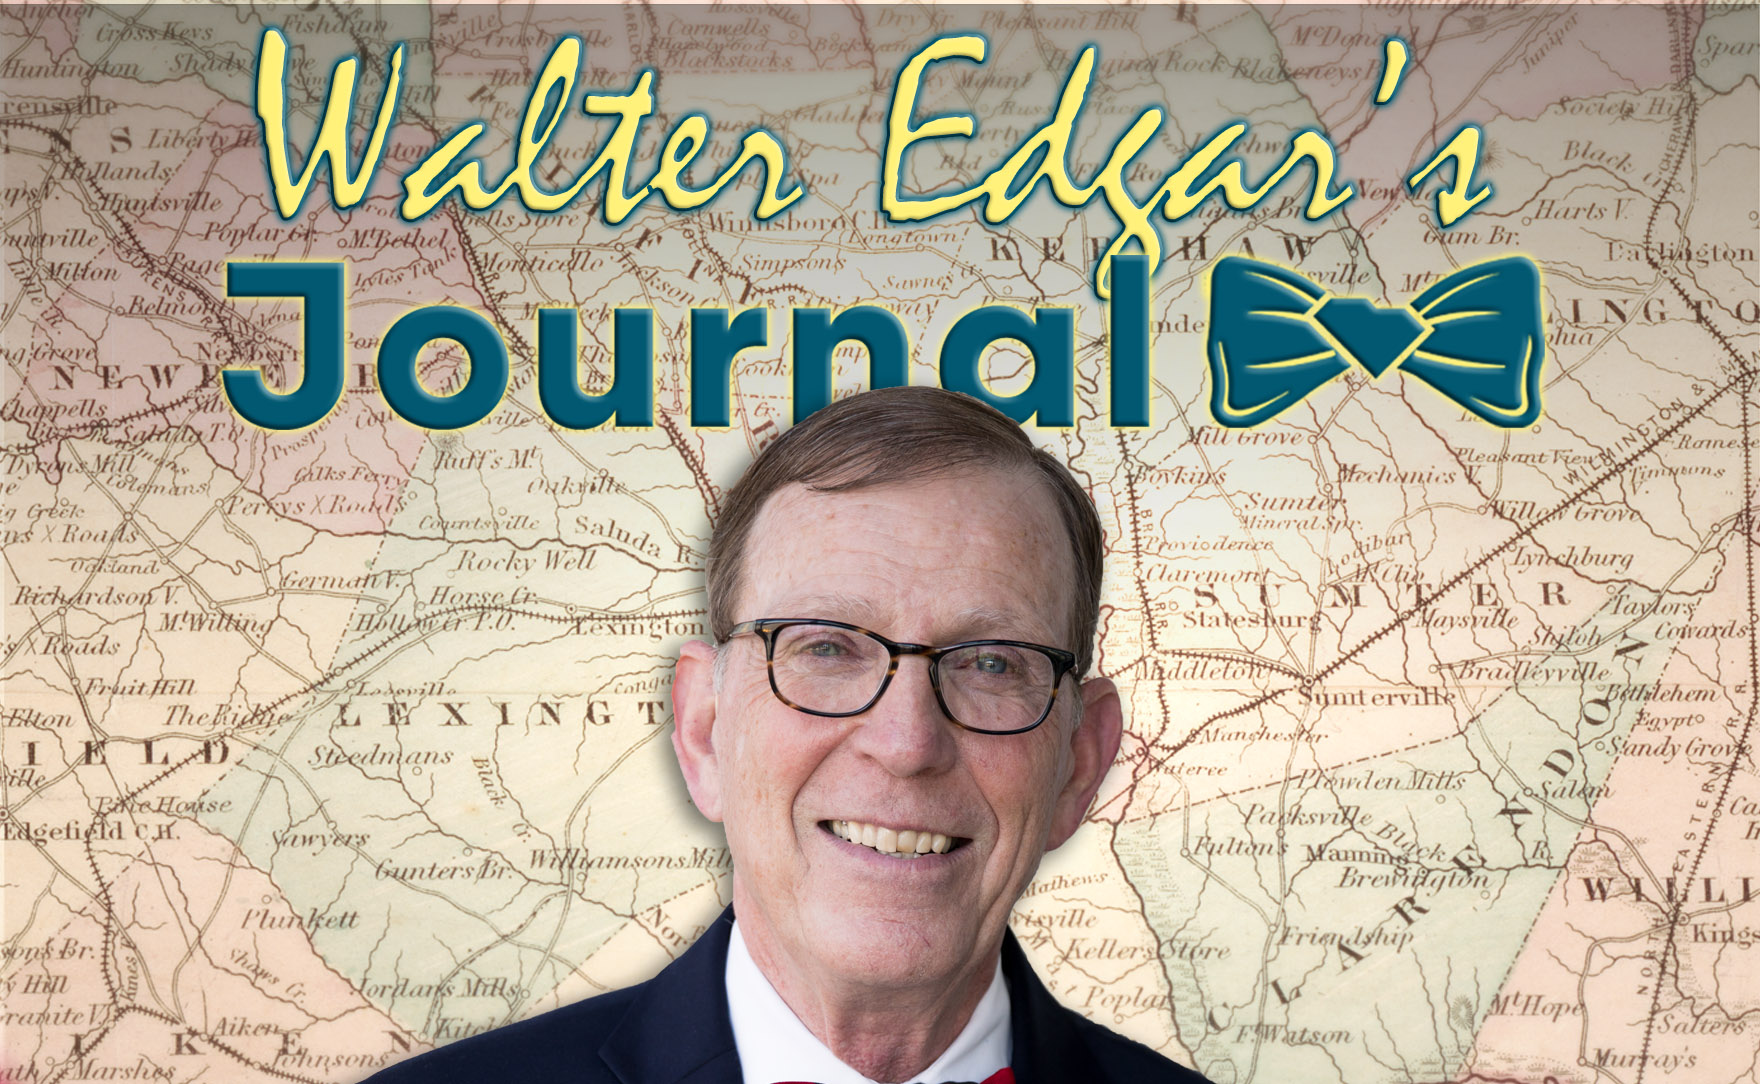 Walter Edar's Journal